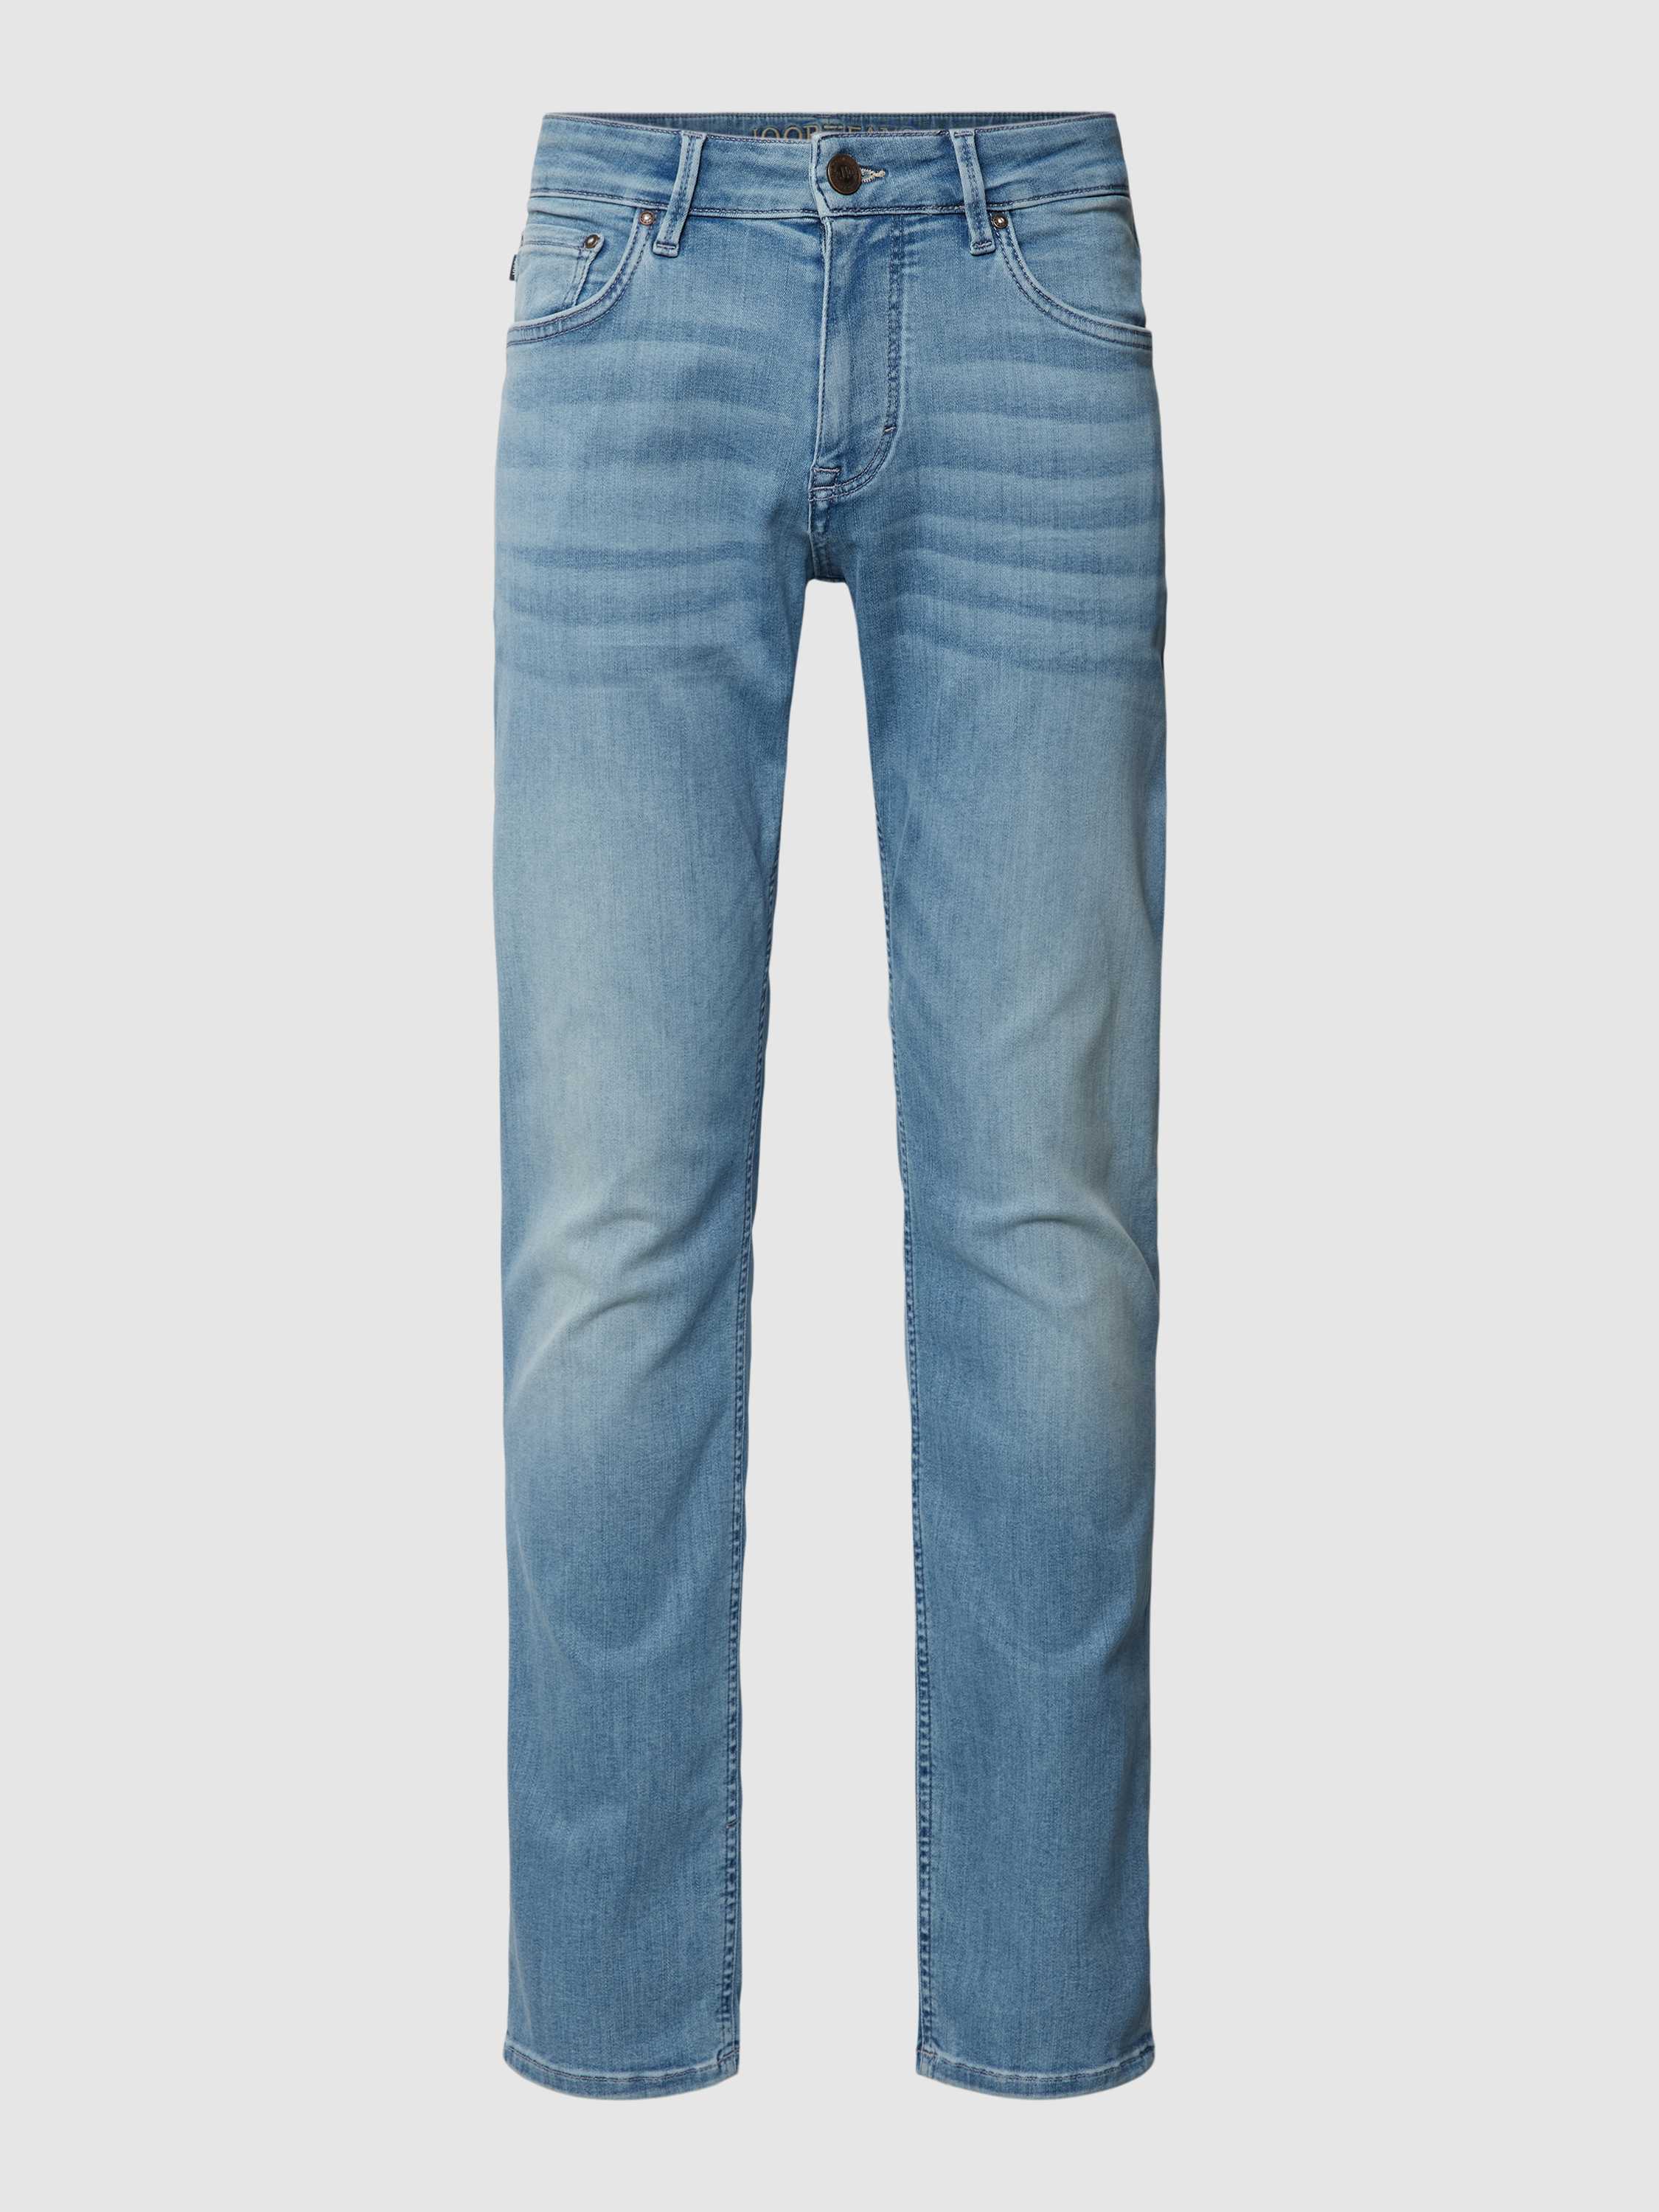 Slim Fit Jeans im 5-Pocket-Design Modell 'Stephen'